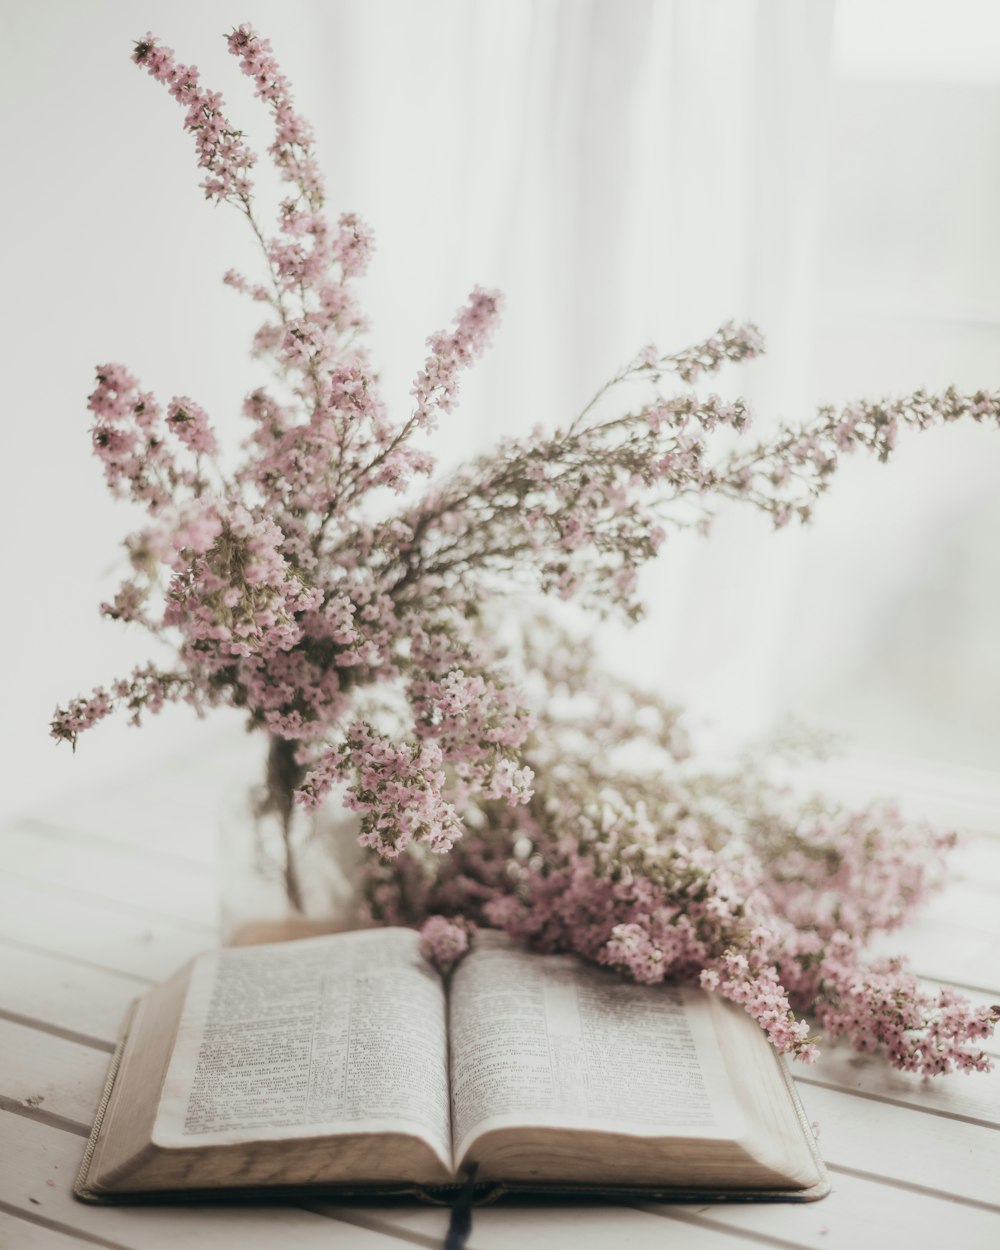 un livre ouvert posé sur une table à côté d’un bouquet de fleurs